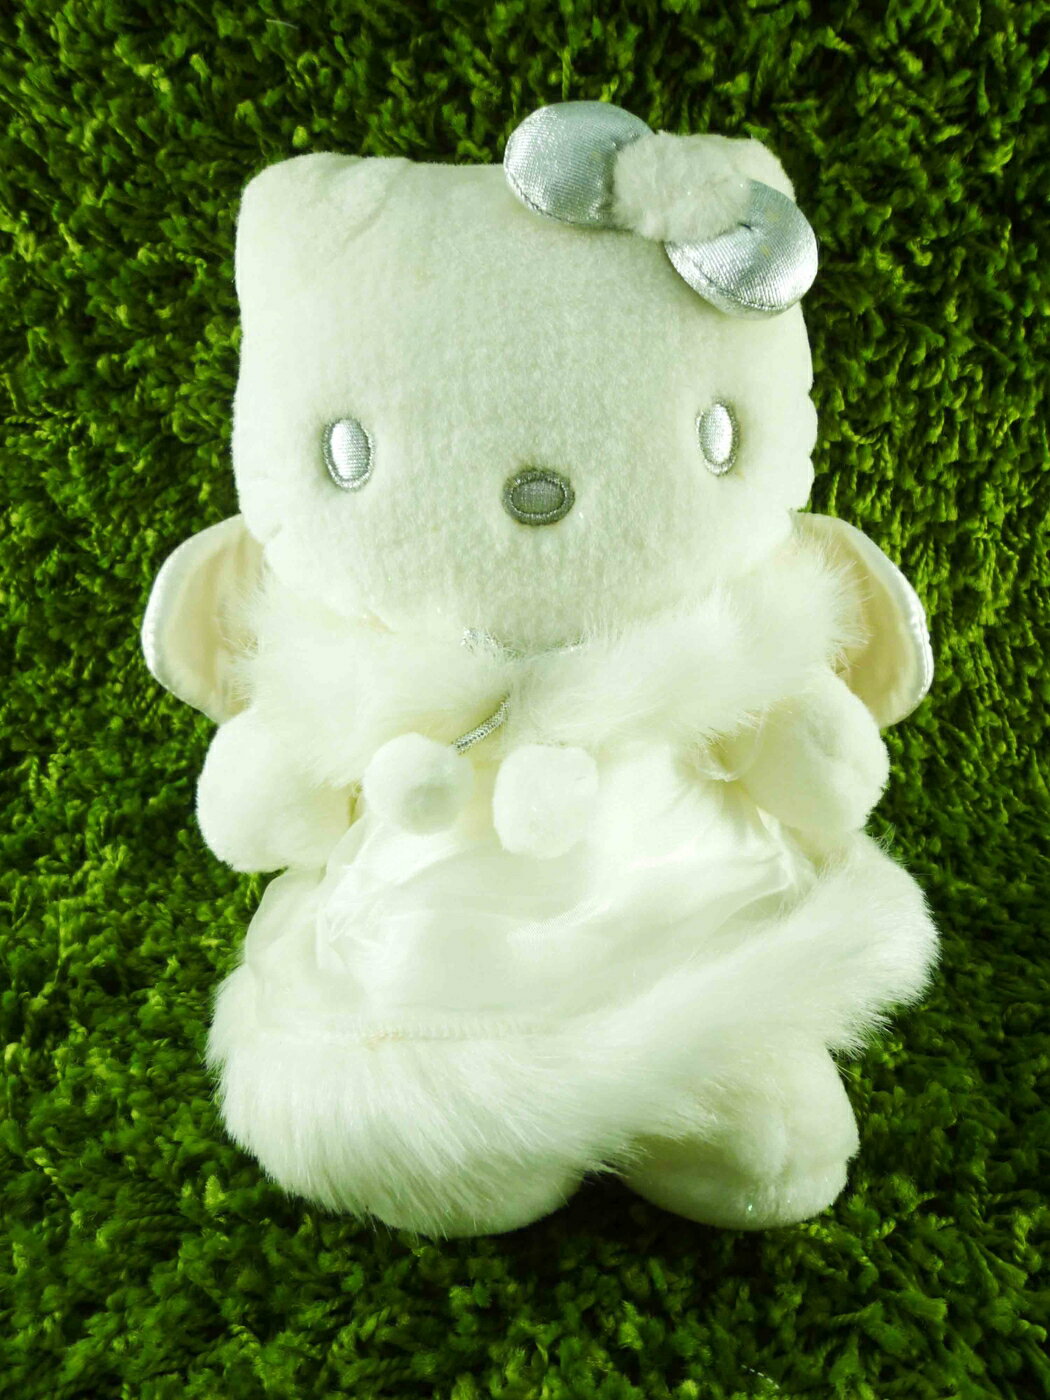 【震撼精品百貨】Hello Kitty 凱蒂貓 KITTY絨毛娃娃-天使圖案-白毛 震撼日式精品百貨